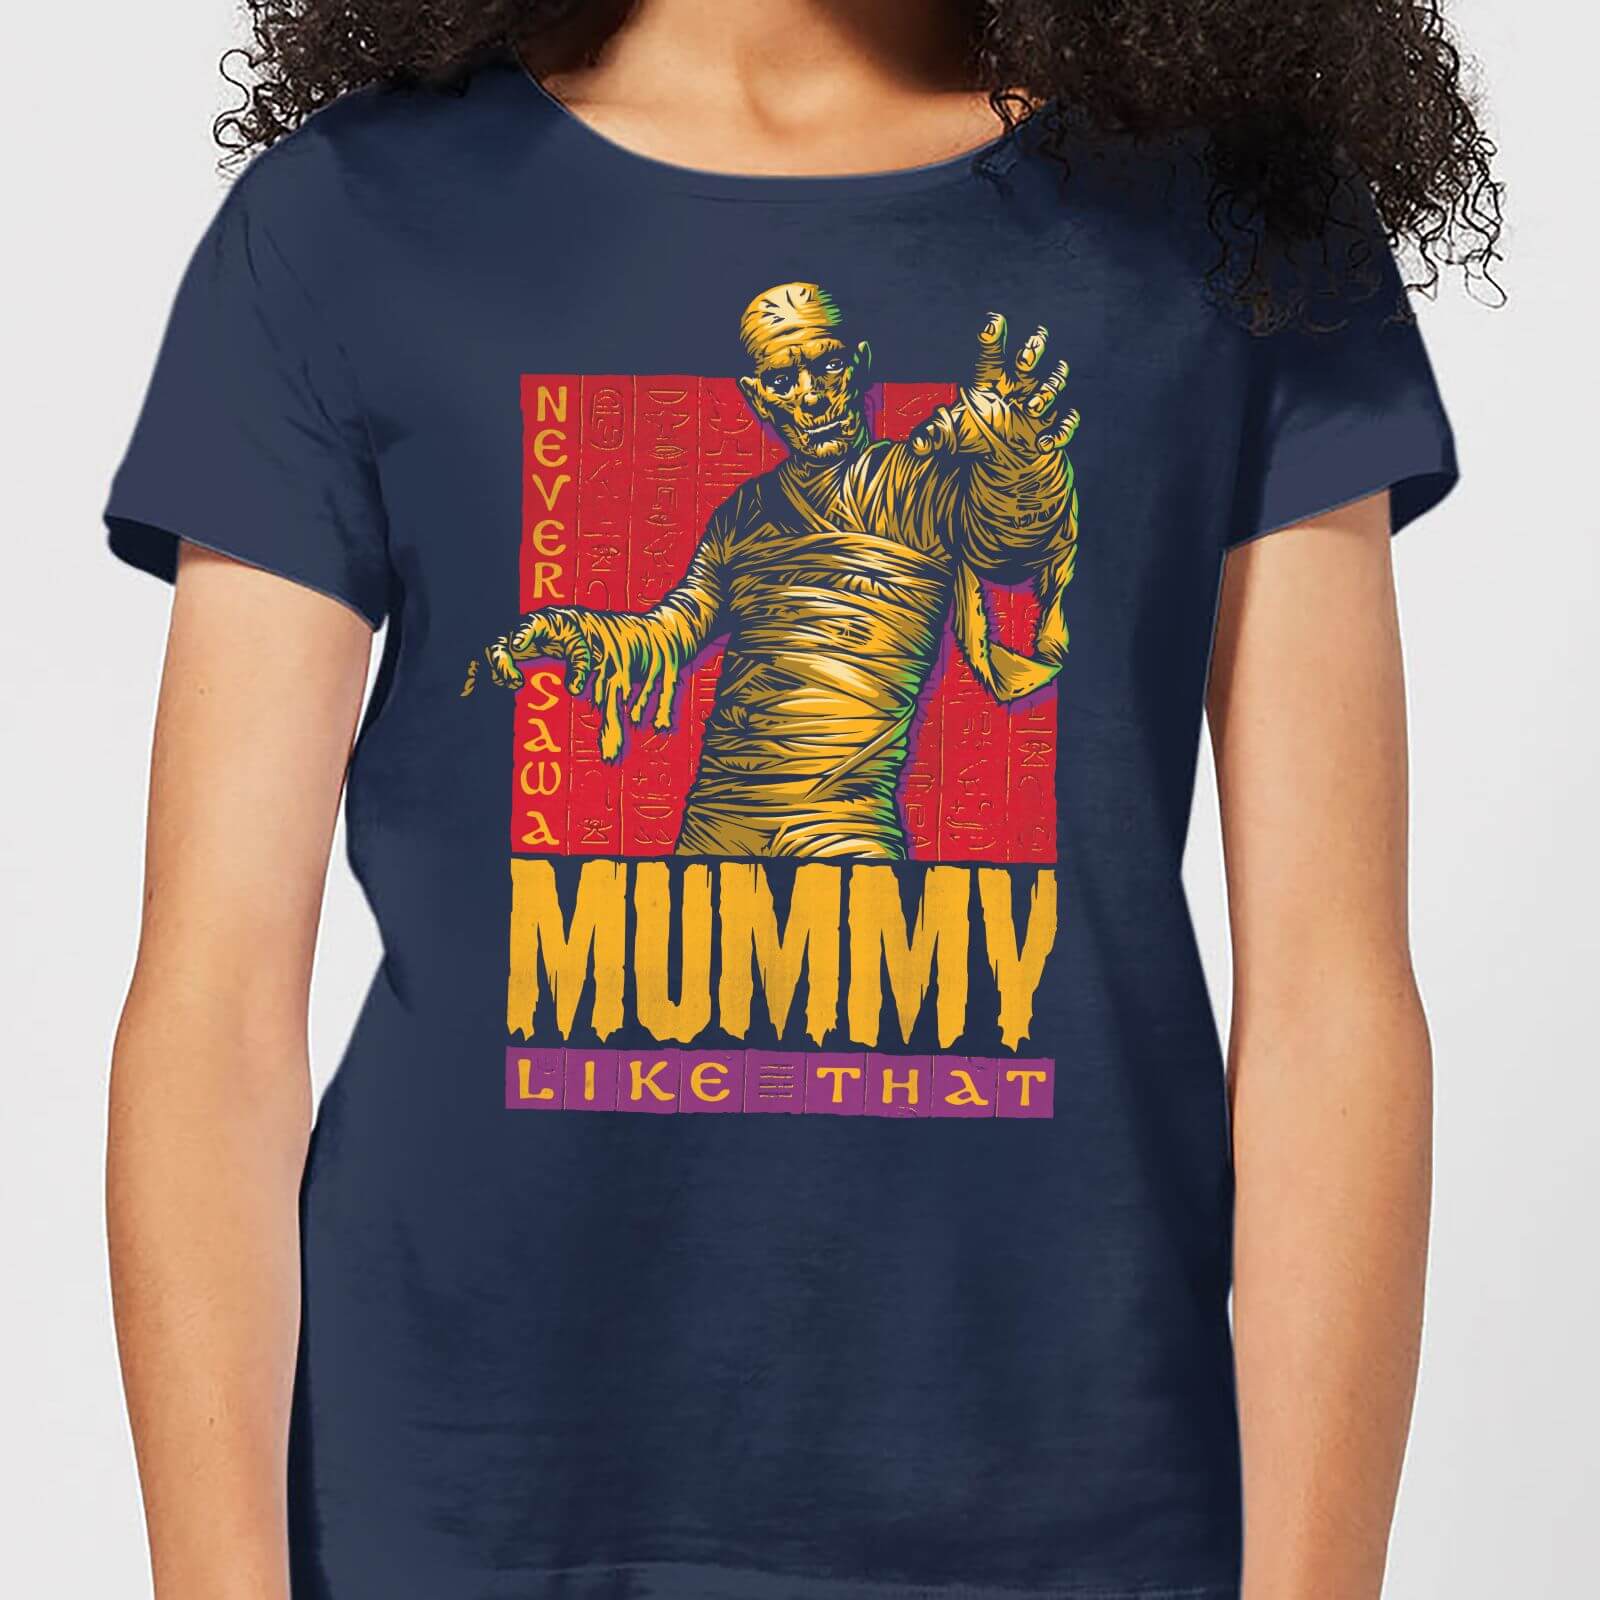 Universal Monsters The Mummy Retro Women's T-Shirt - Navy - M - Navy